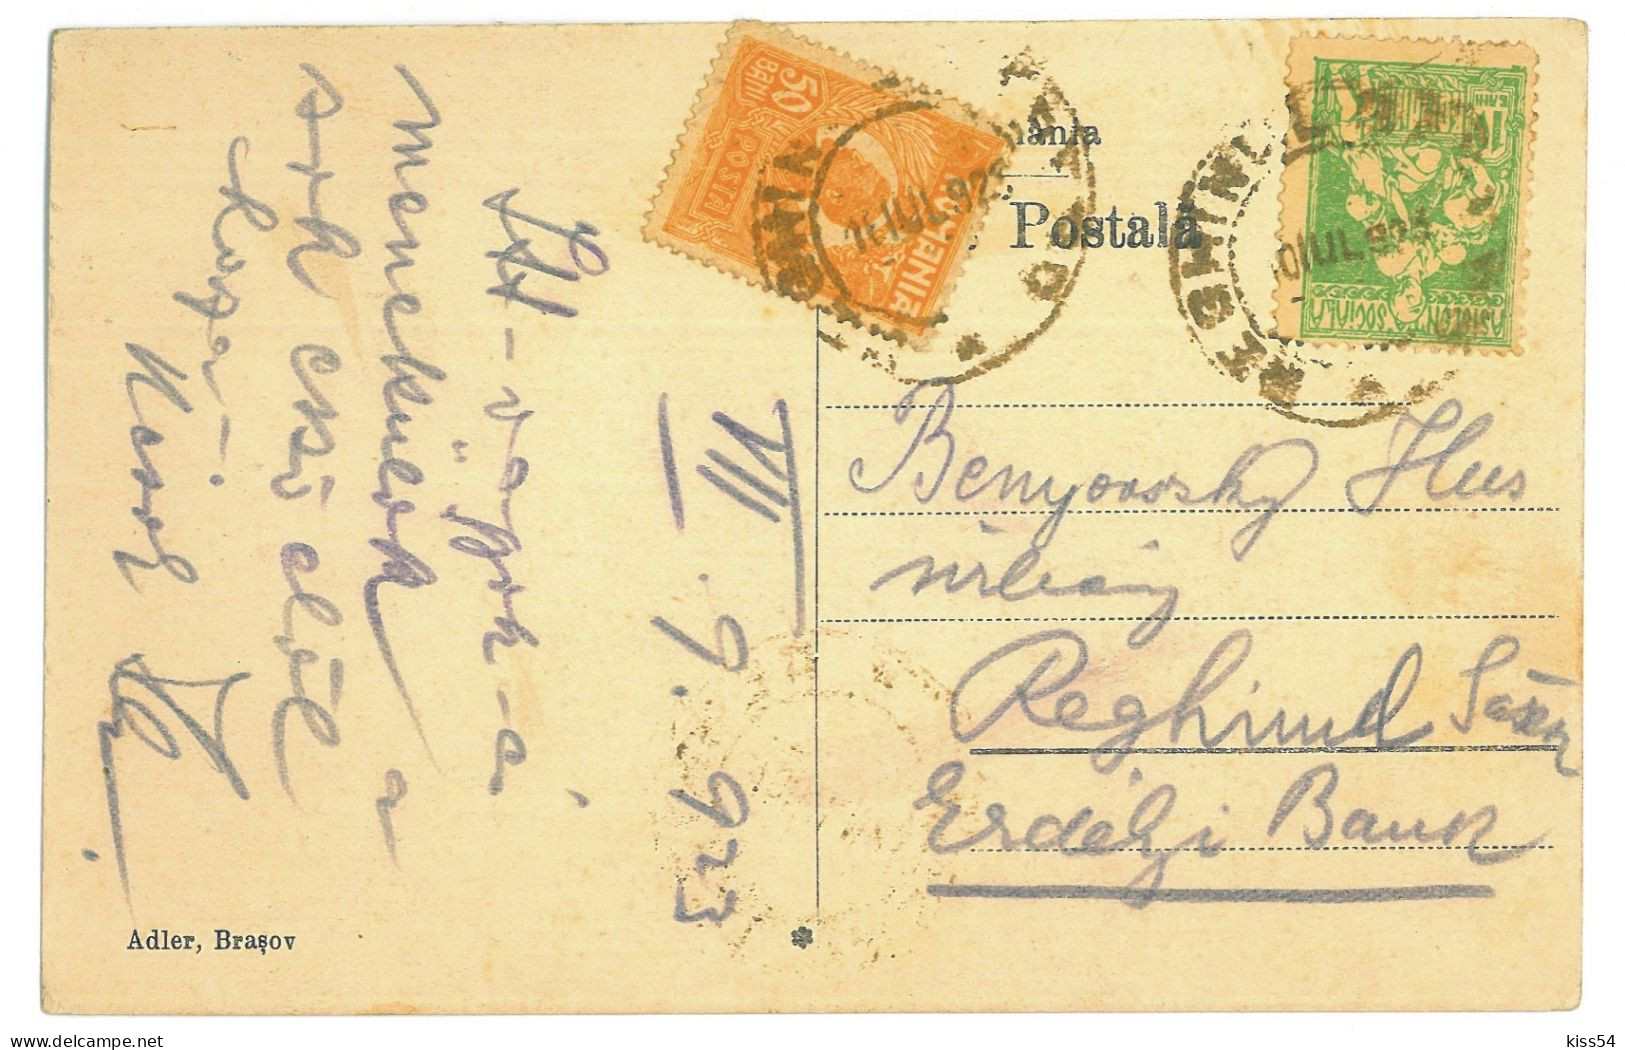 RO 47 - 23735 TUSNAD, Harghita, Multi Vue, Romania - Old Postcard - Used - 1923 - Rumänien